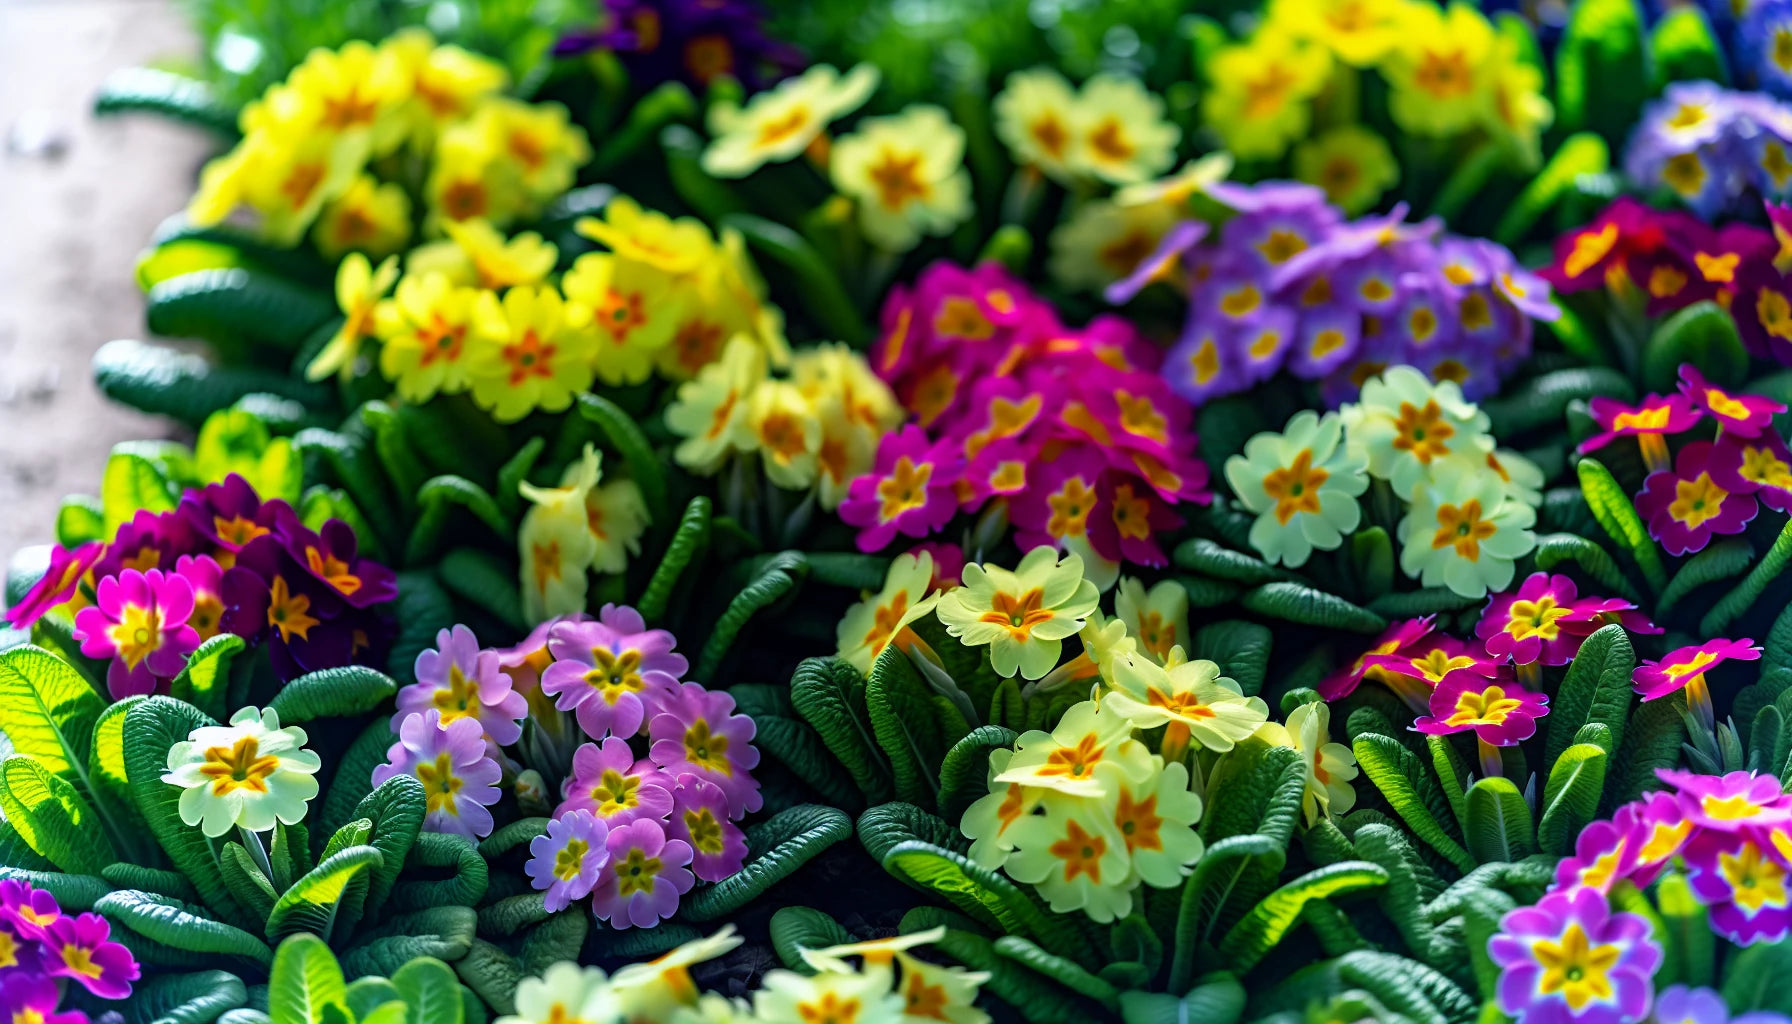 Primrose flowers in various colors